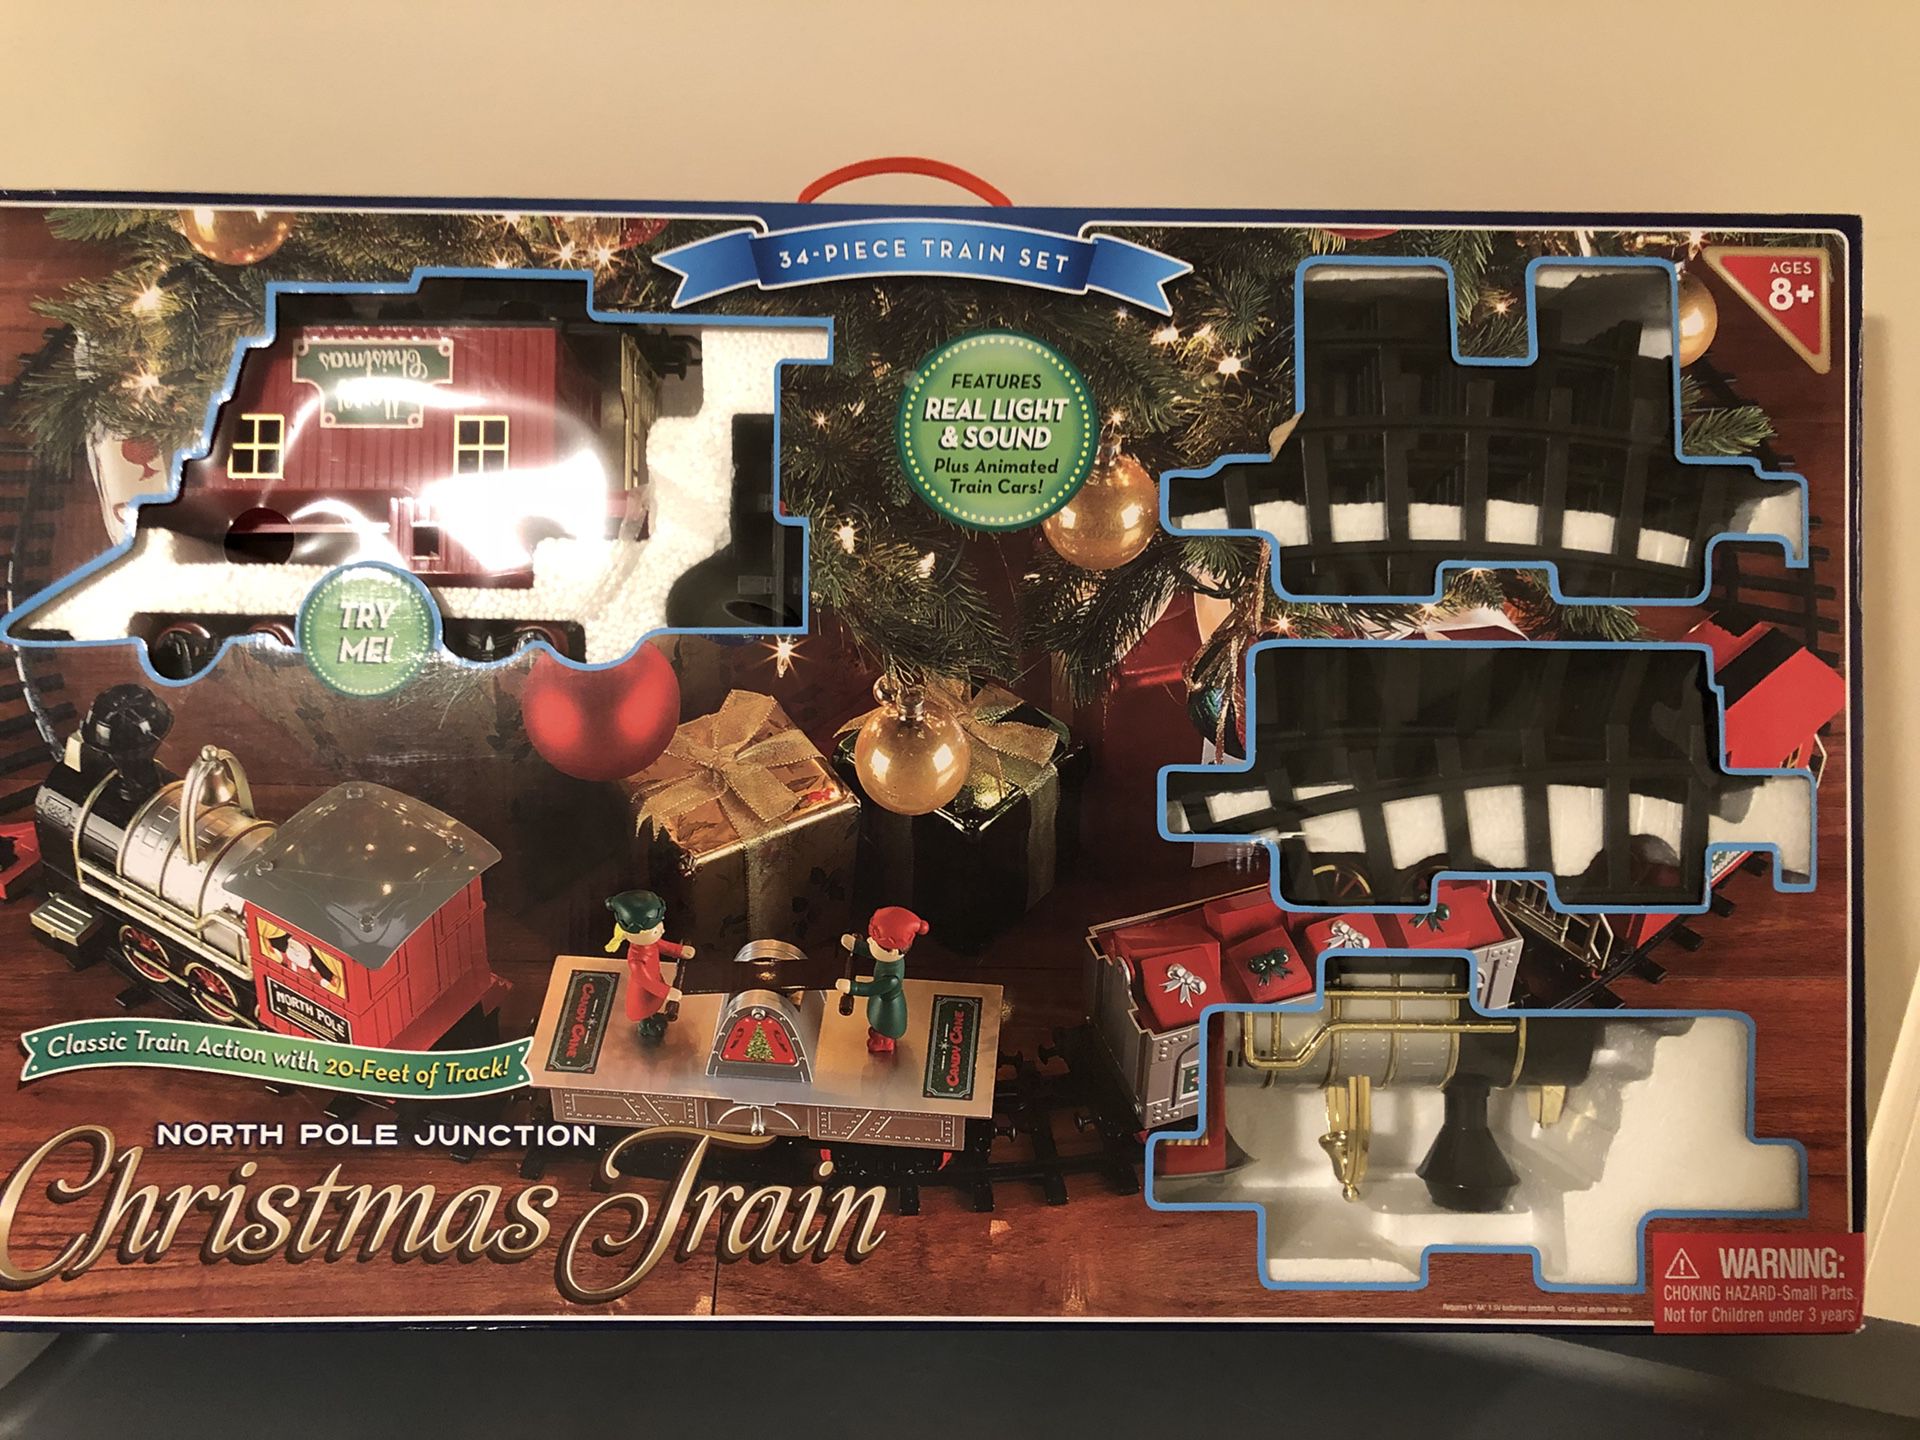 Christmas tree train 34 piece